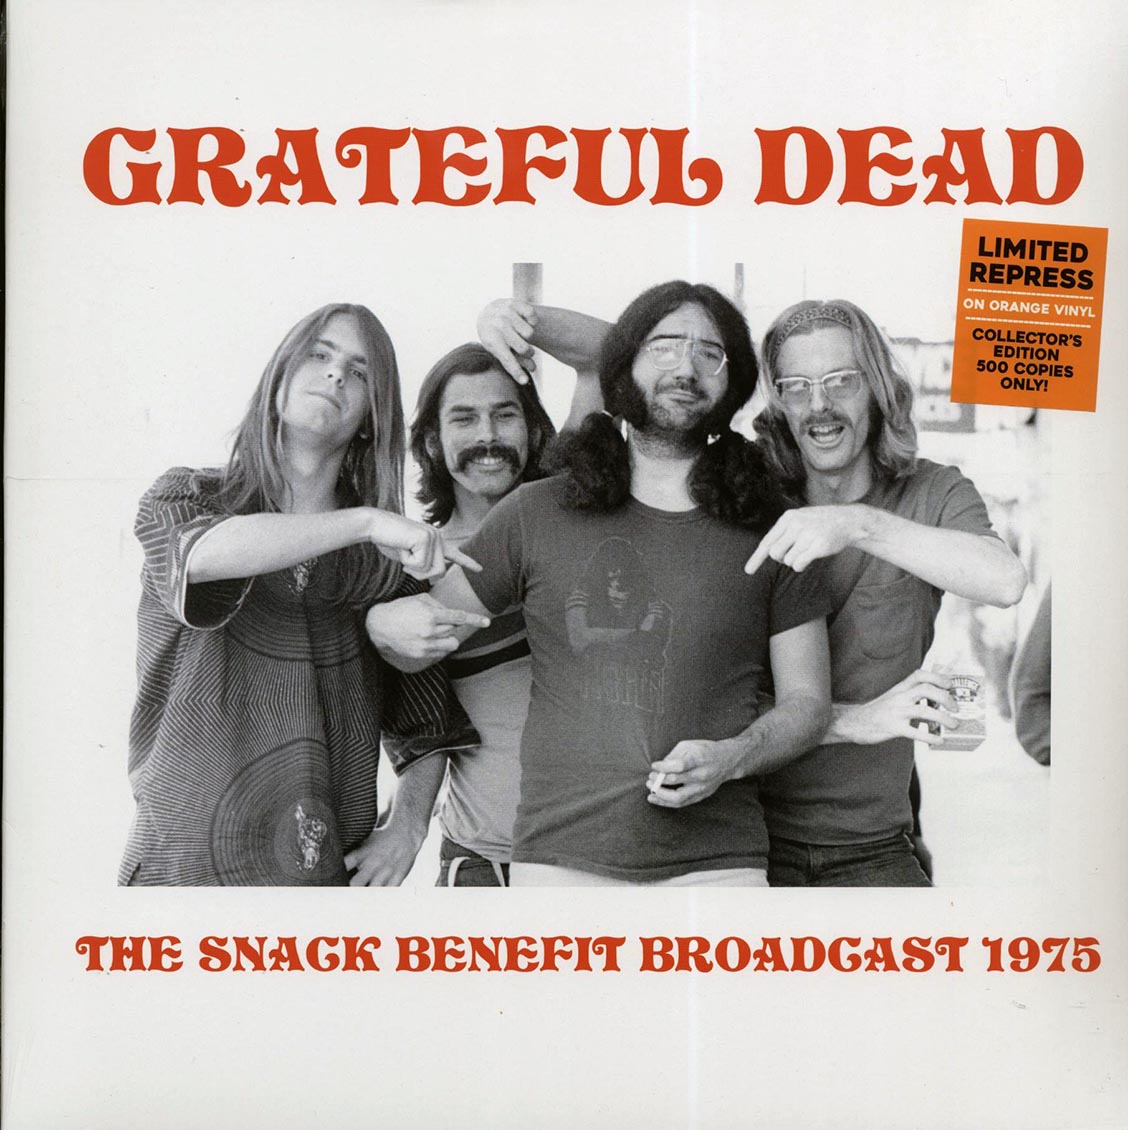 Grateful Dead - The Snack Benefit Broadcast 1975 (ltd. 500 copies made) (orange vinyl) - Vinyl LP